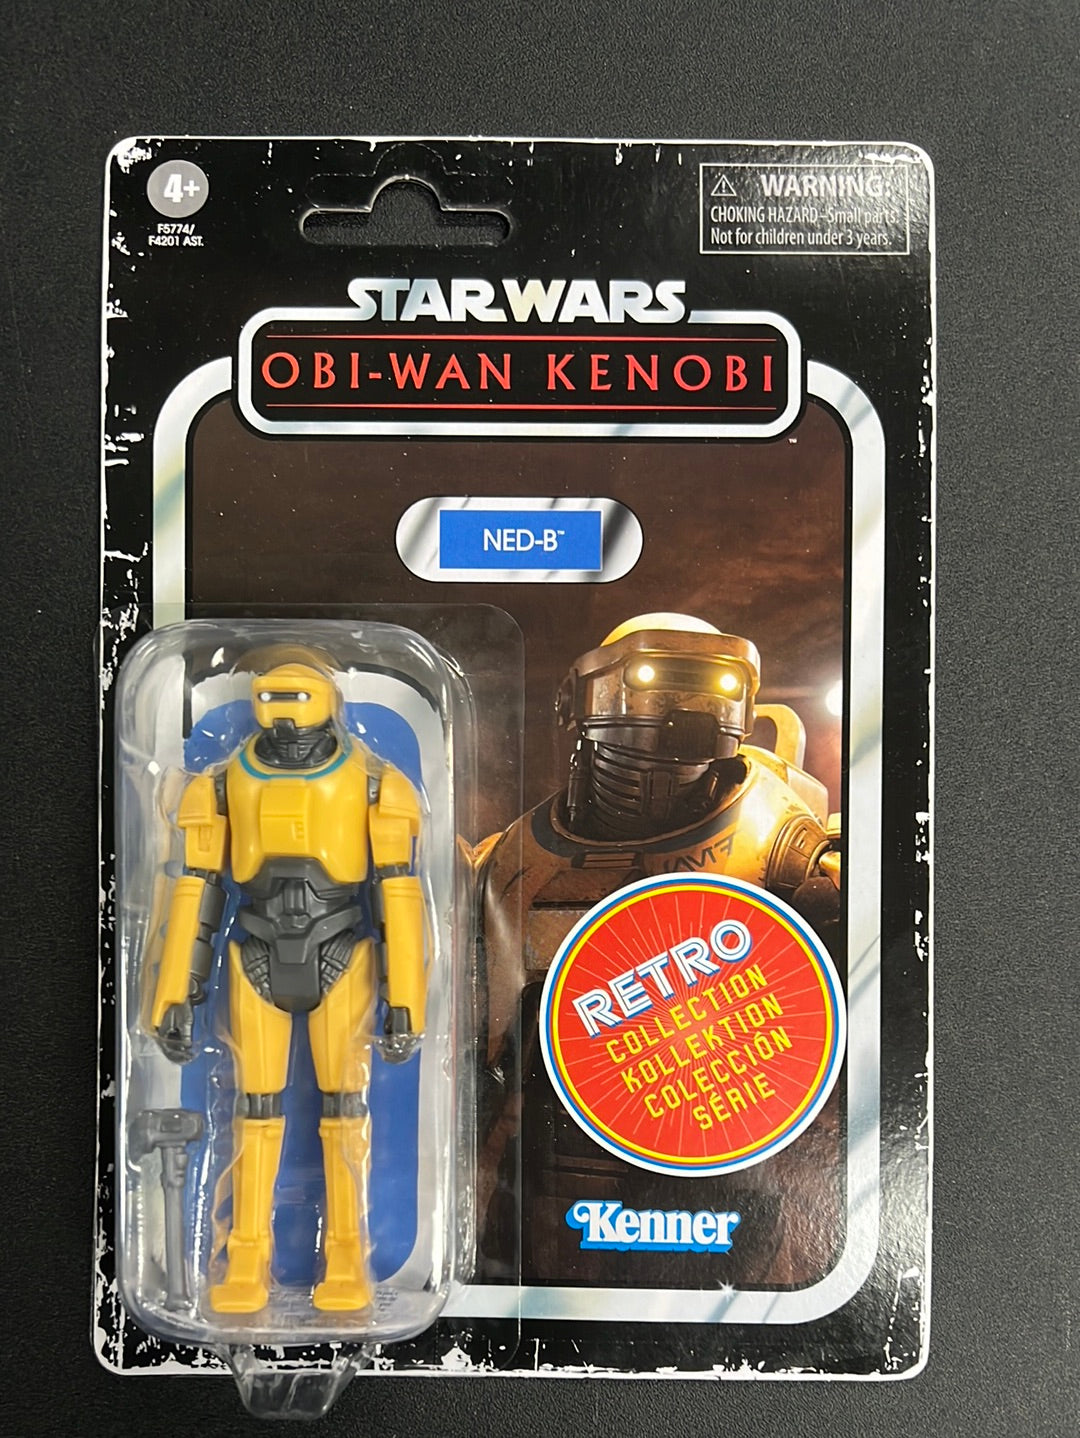 Star Wars Obi-Wan Kenobi NED-B Retro Kenner 3.75" Action Figure